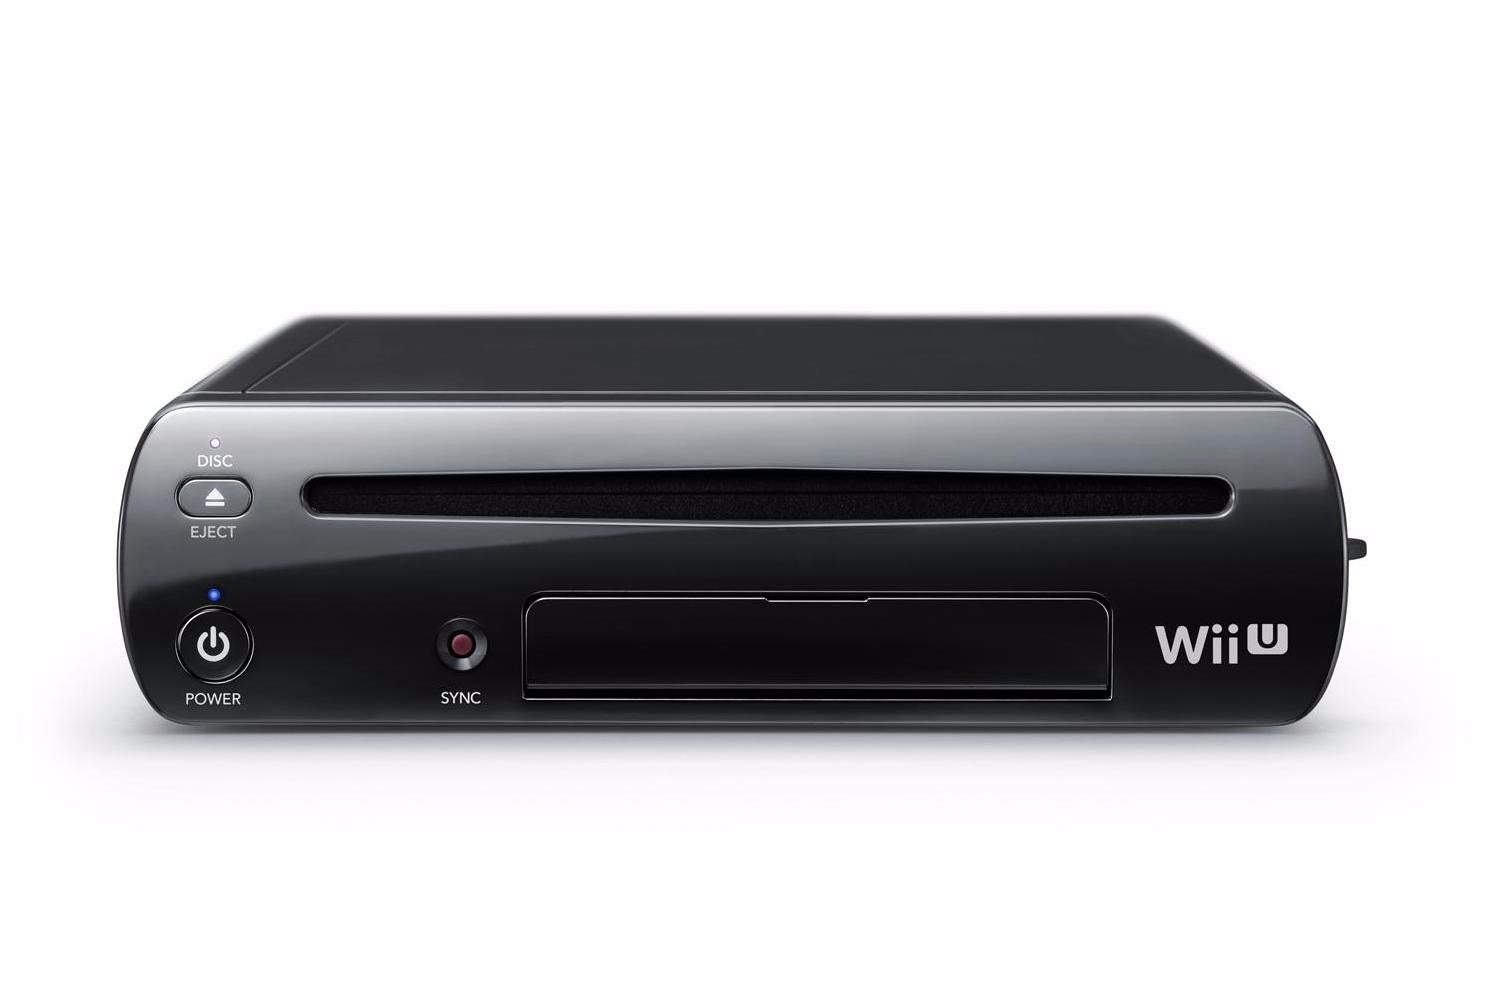 Immagine di Con 13,5 milioni di unità vendute, Wii U diventa ufficialmente la console di minor successo di Nintendo